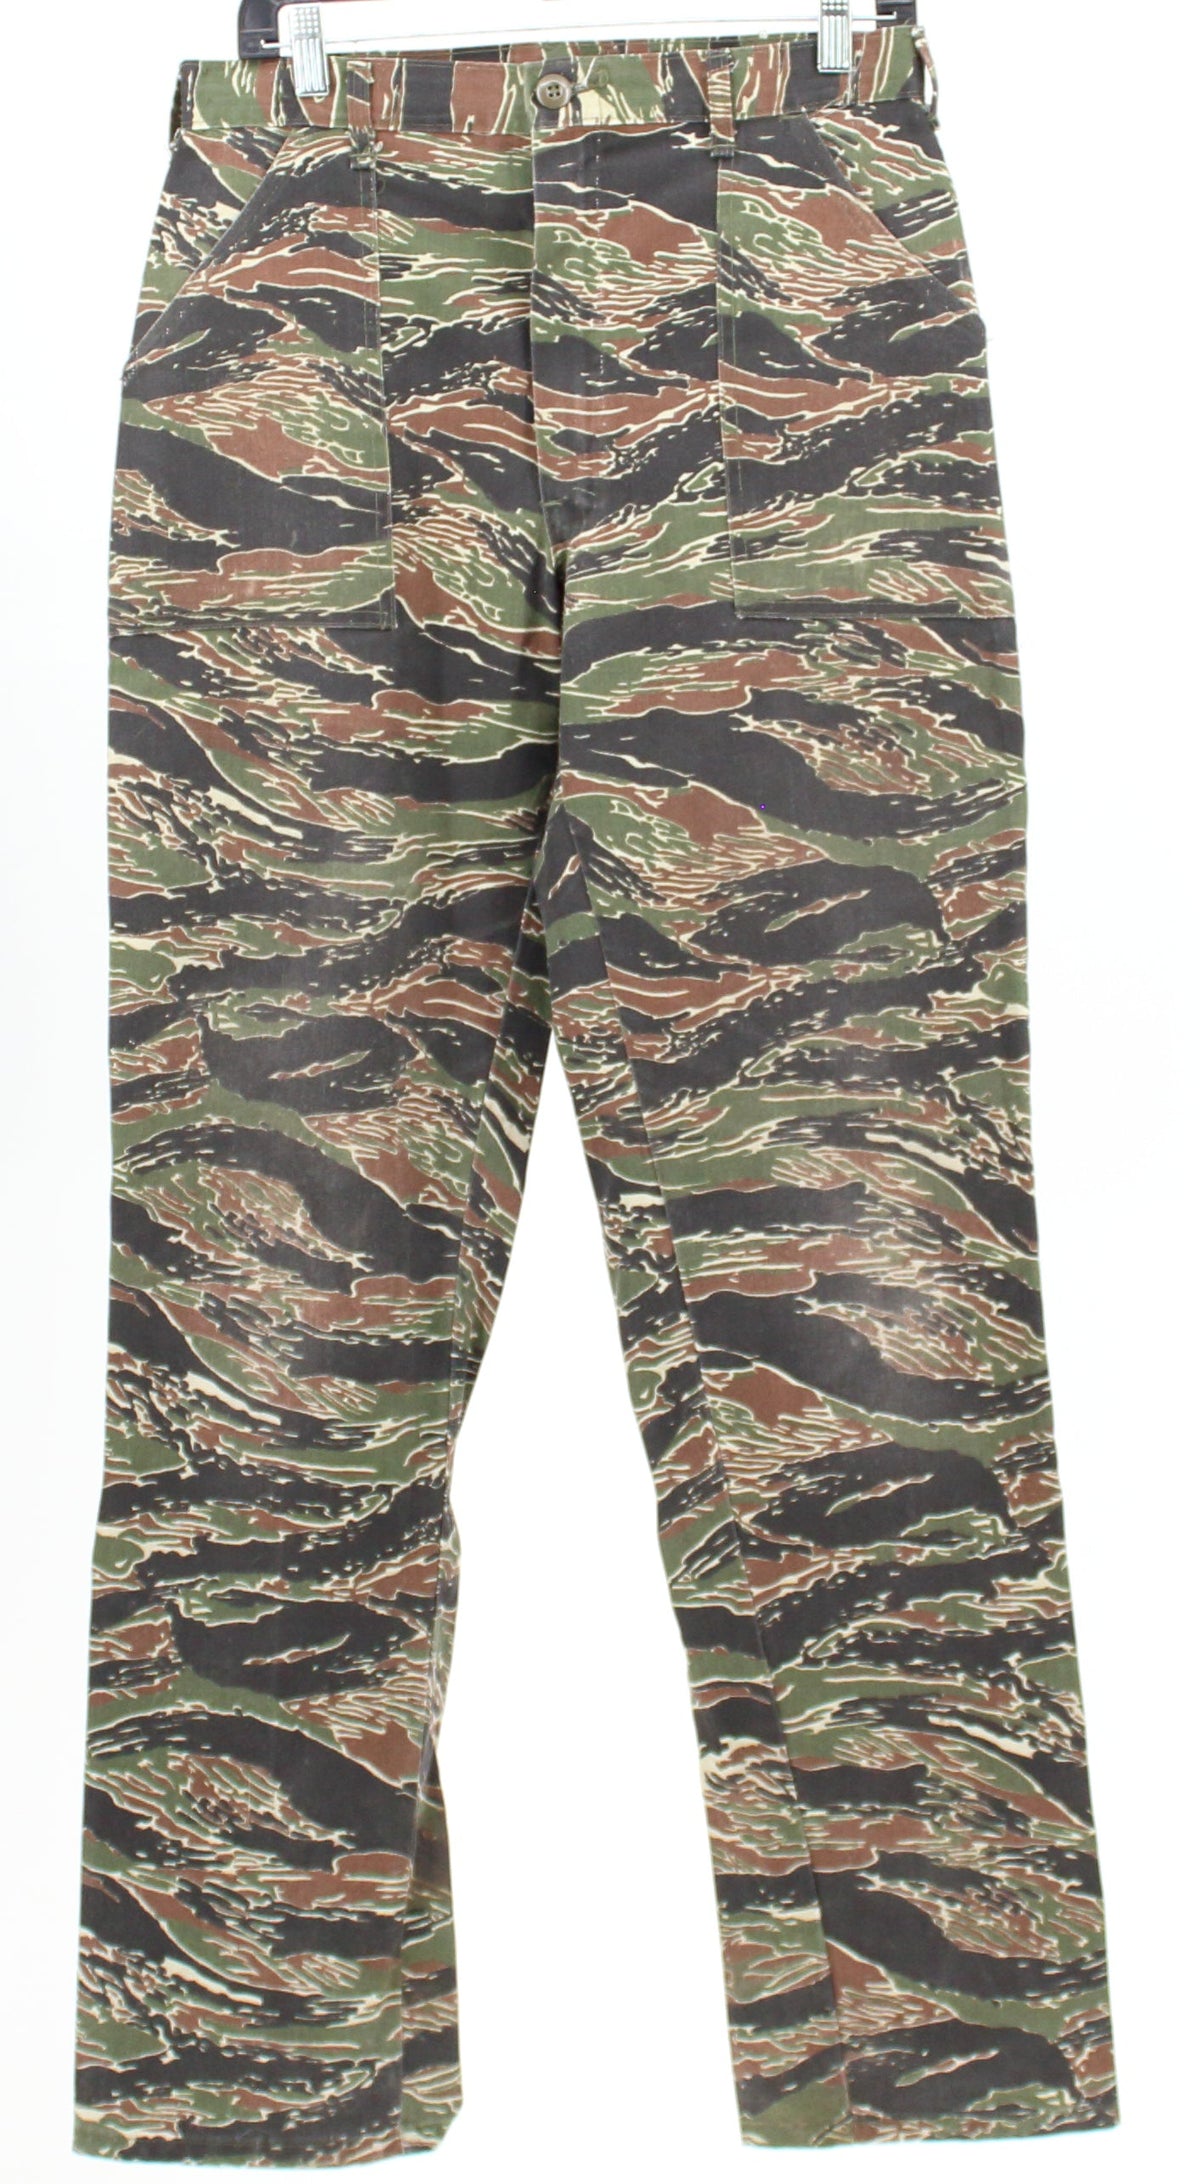 Gung Ho Army Print Pants